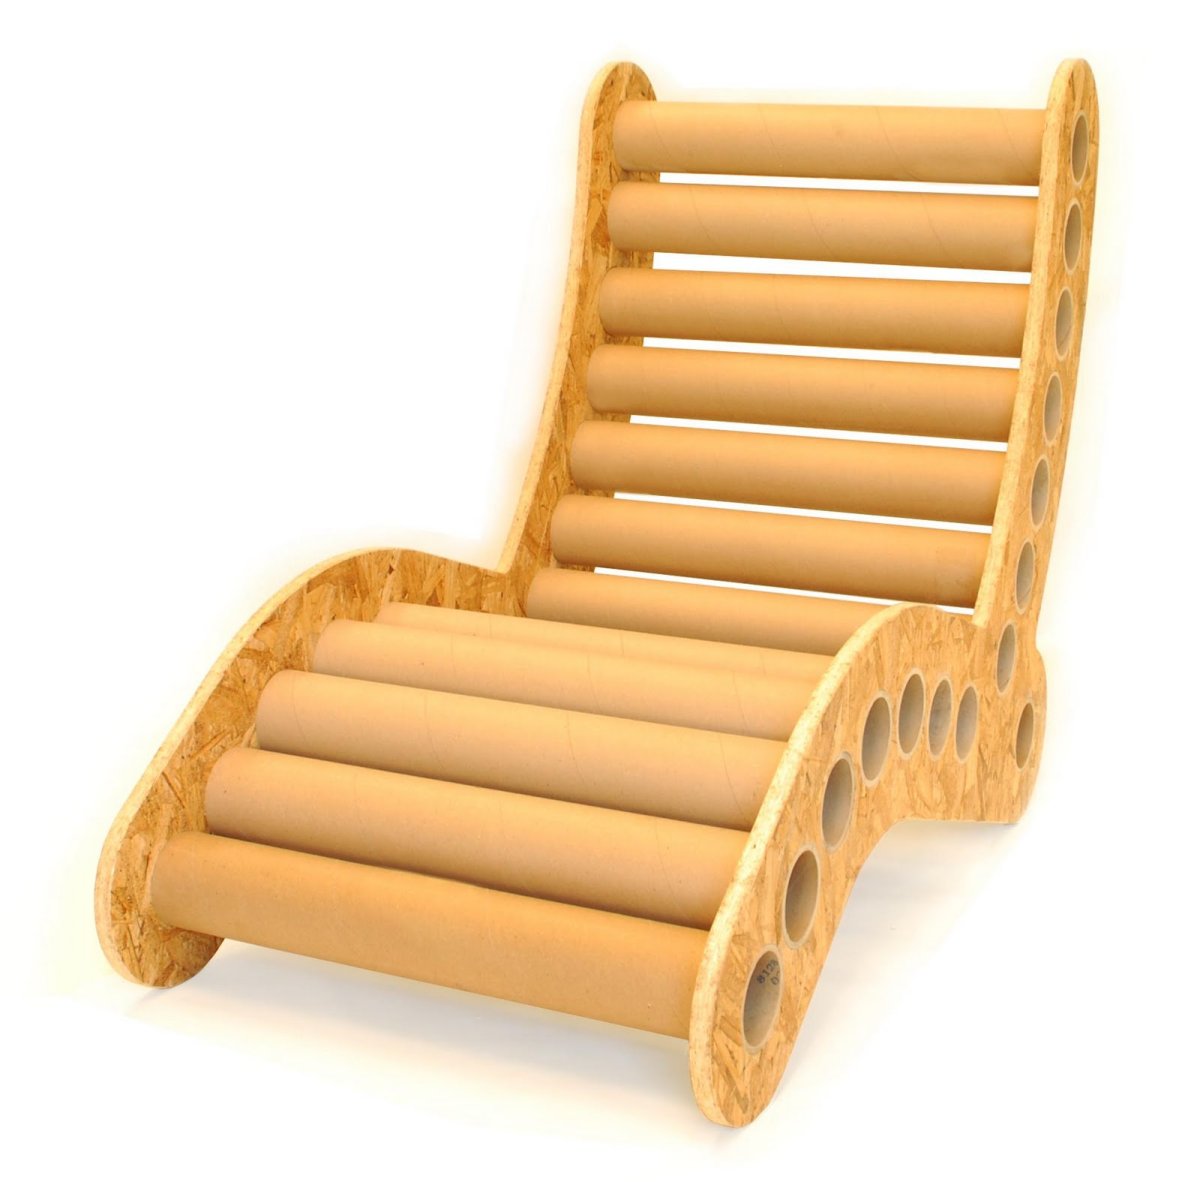 Кресло из тубусов